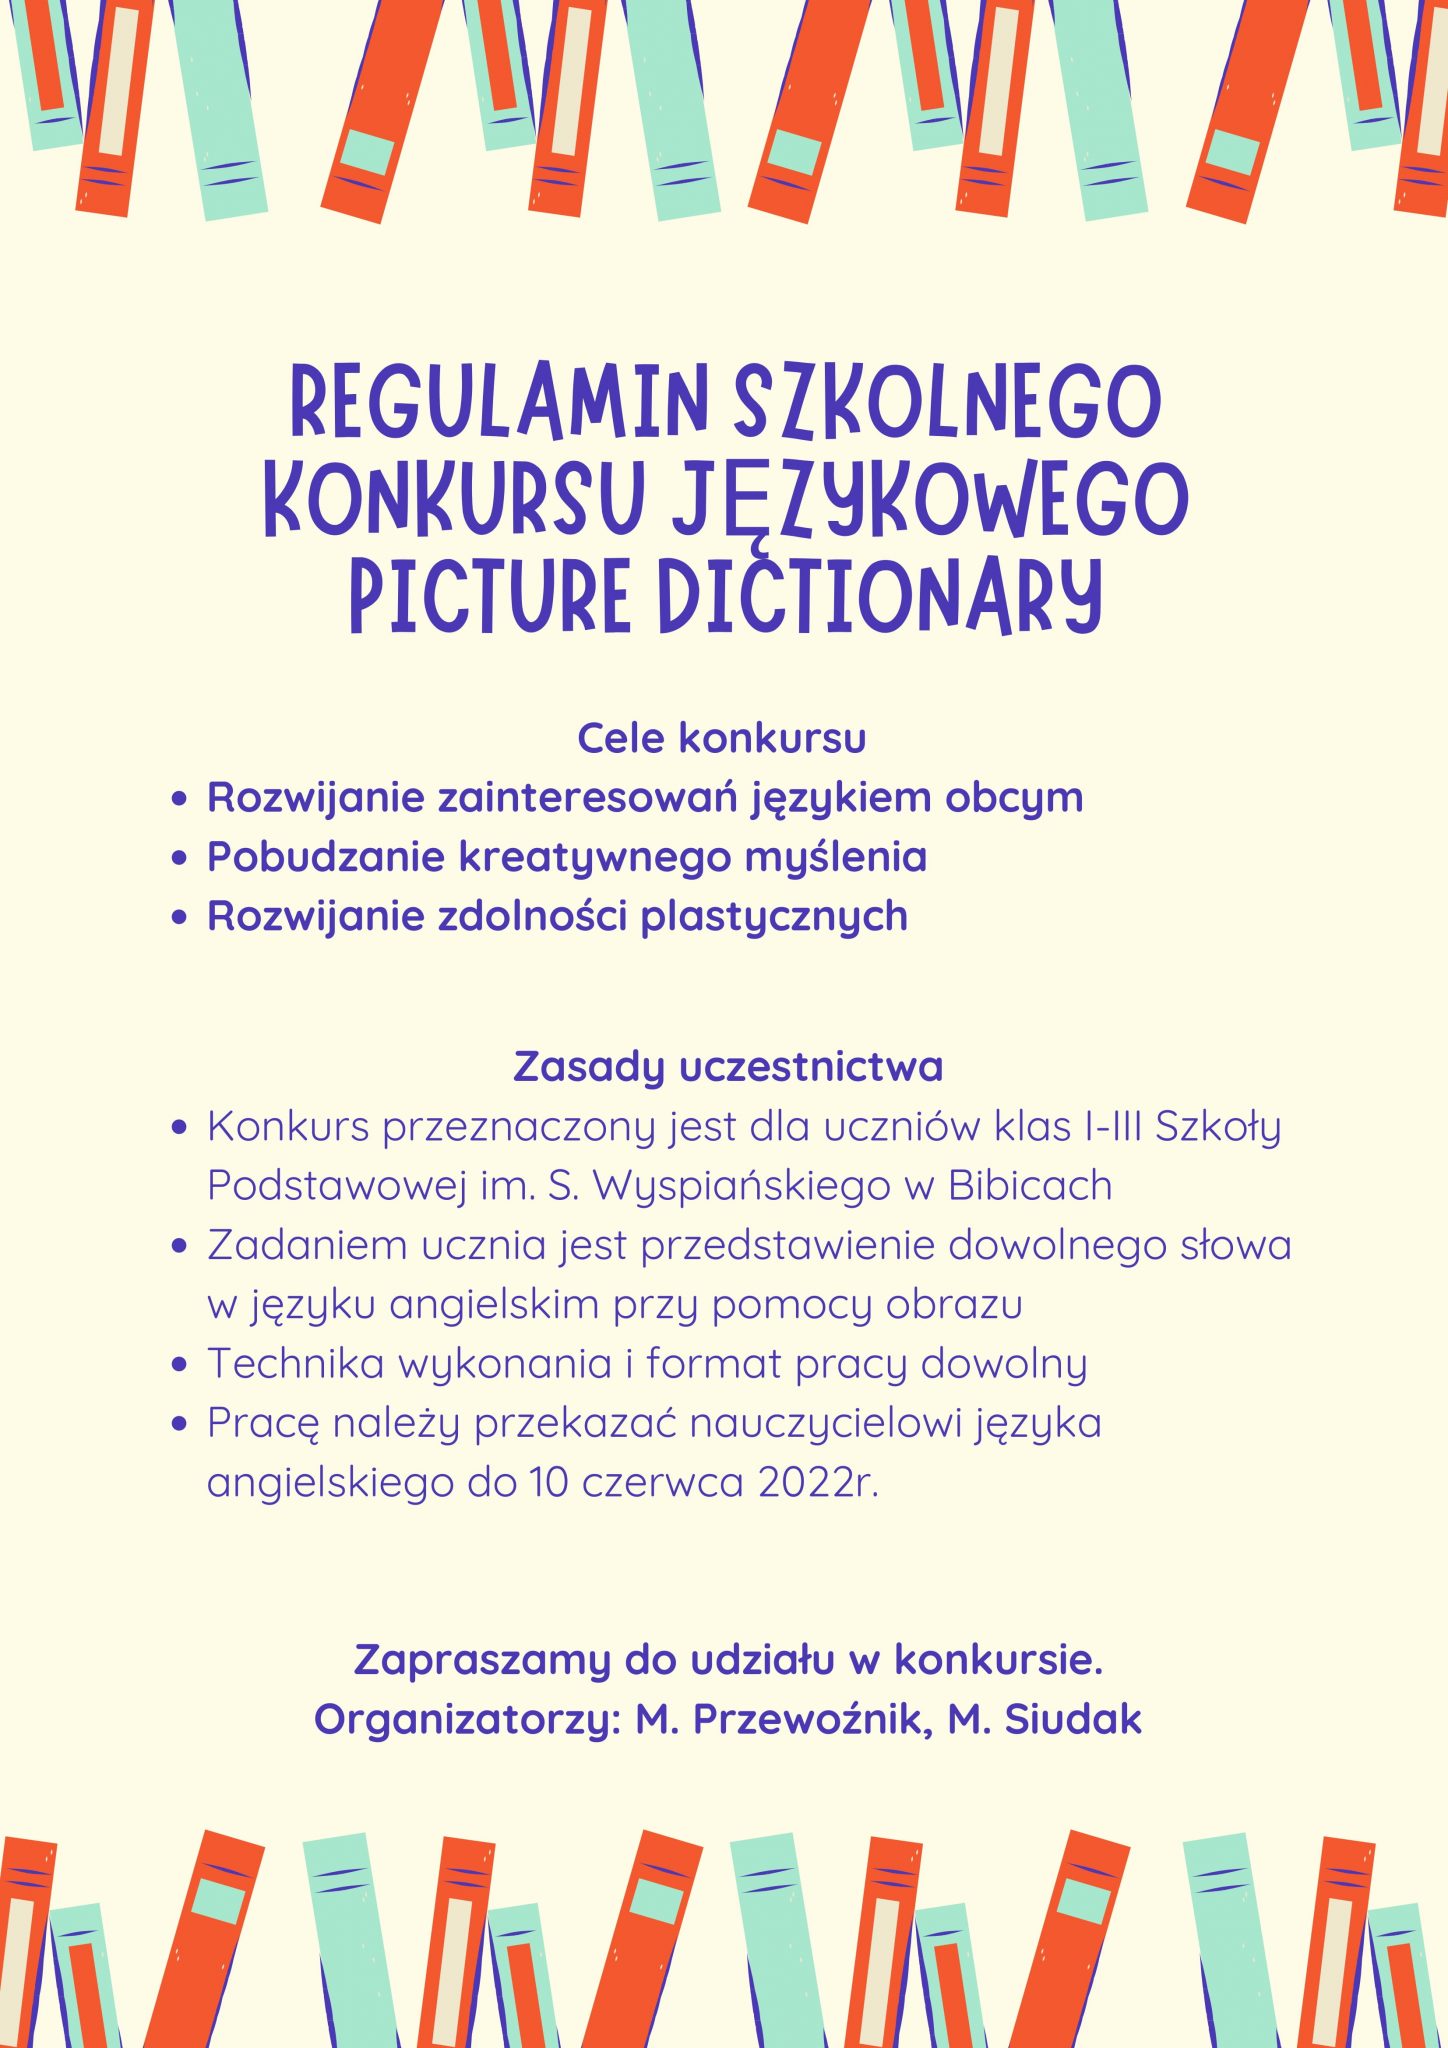 Regulamin szkolnego konkursu językowego "Picture dictionary"